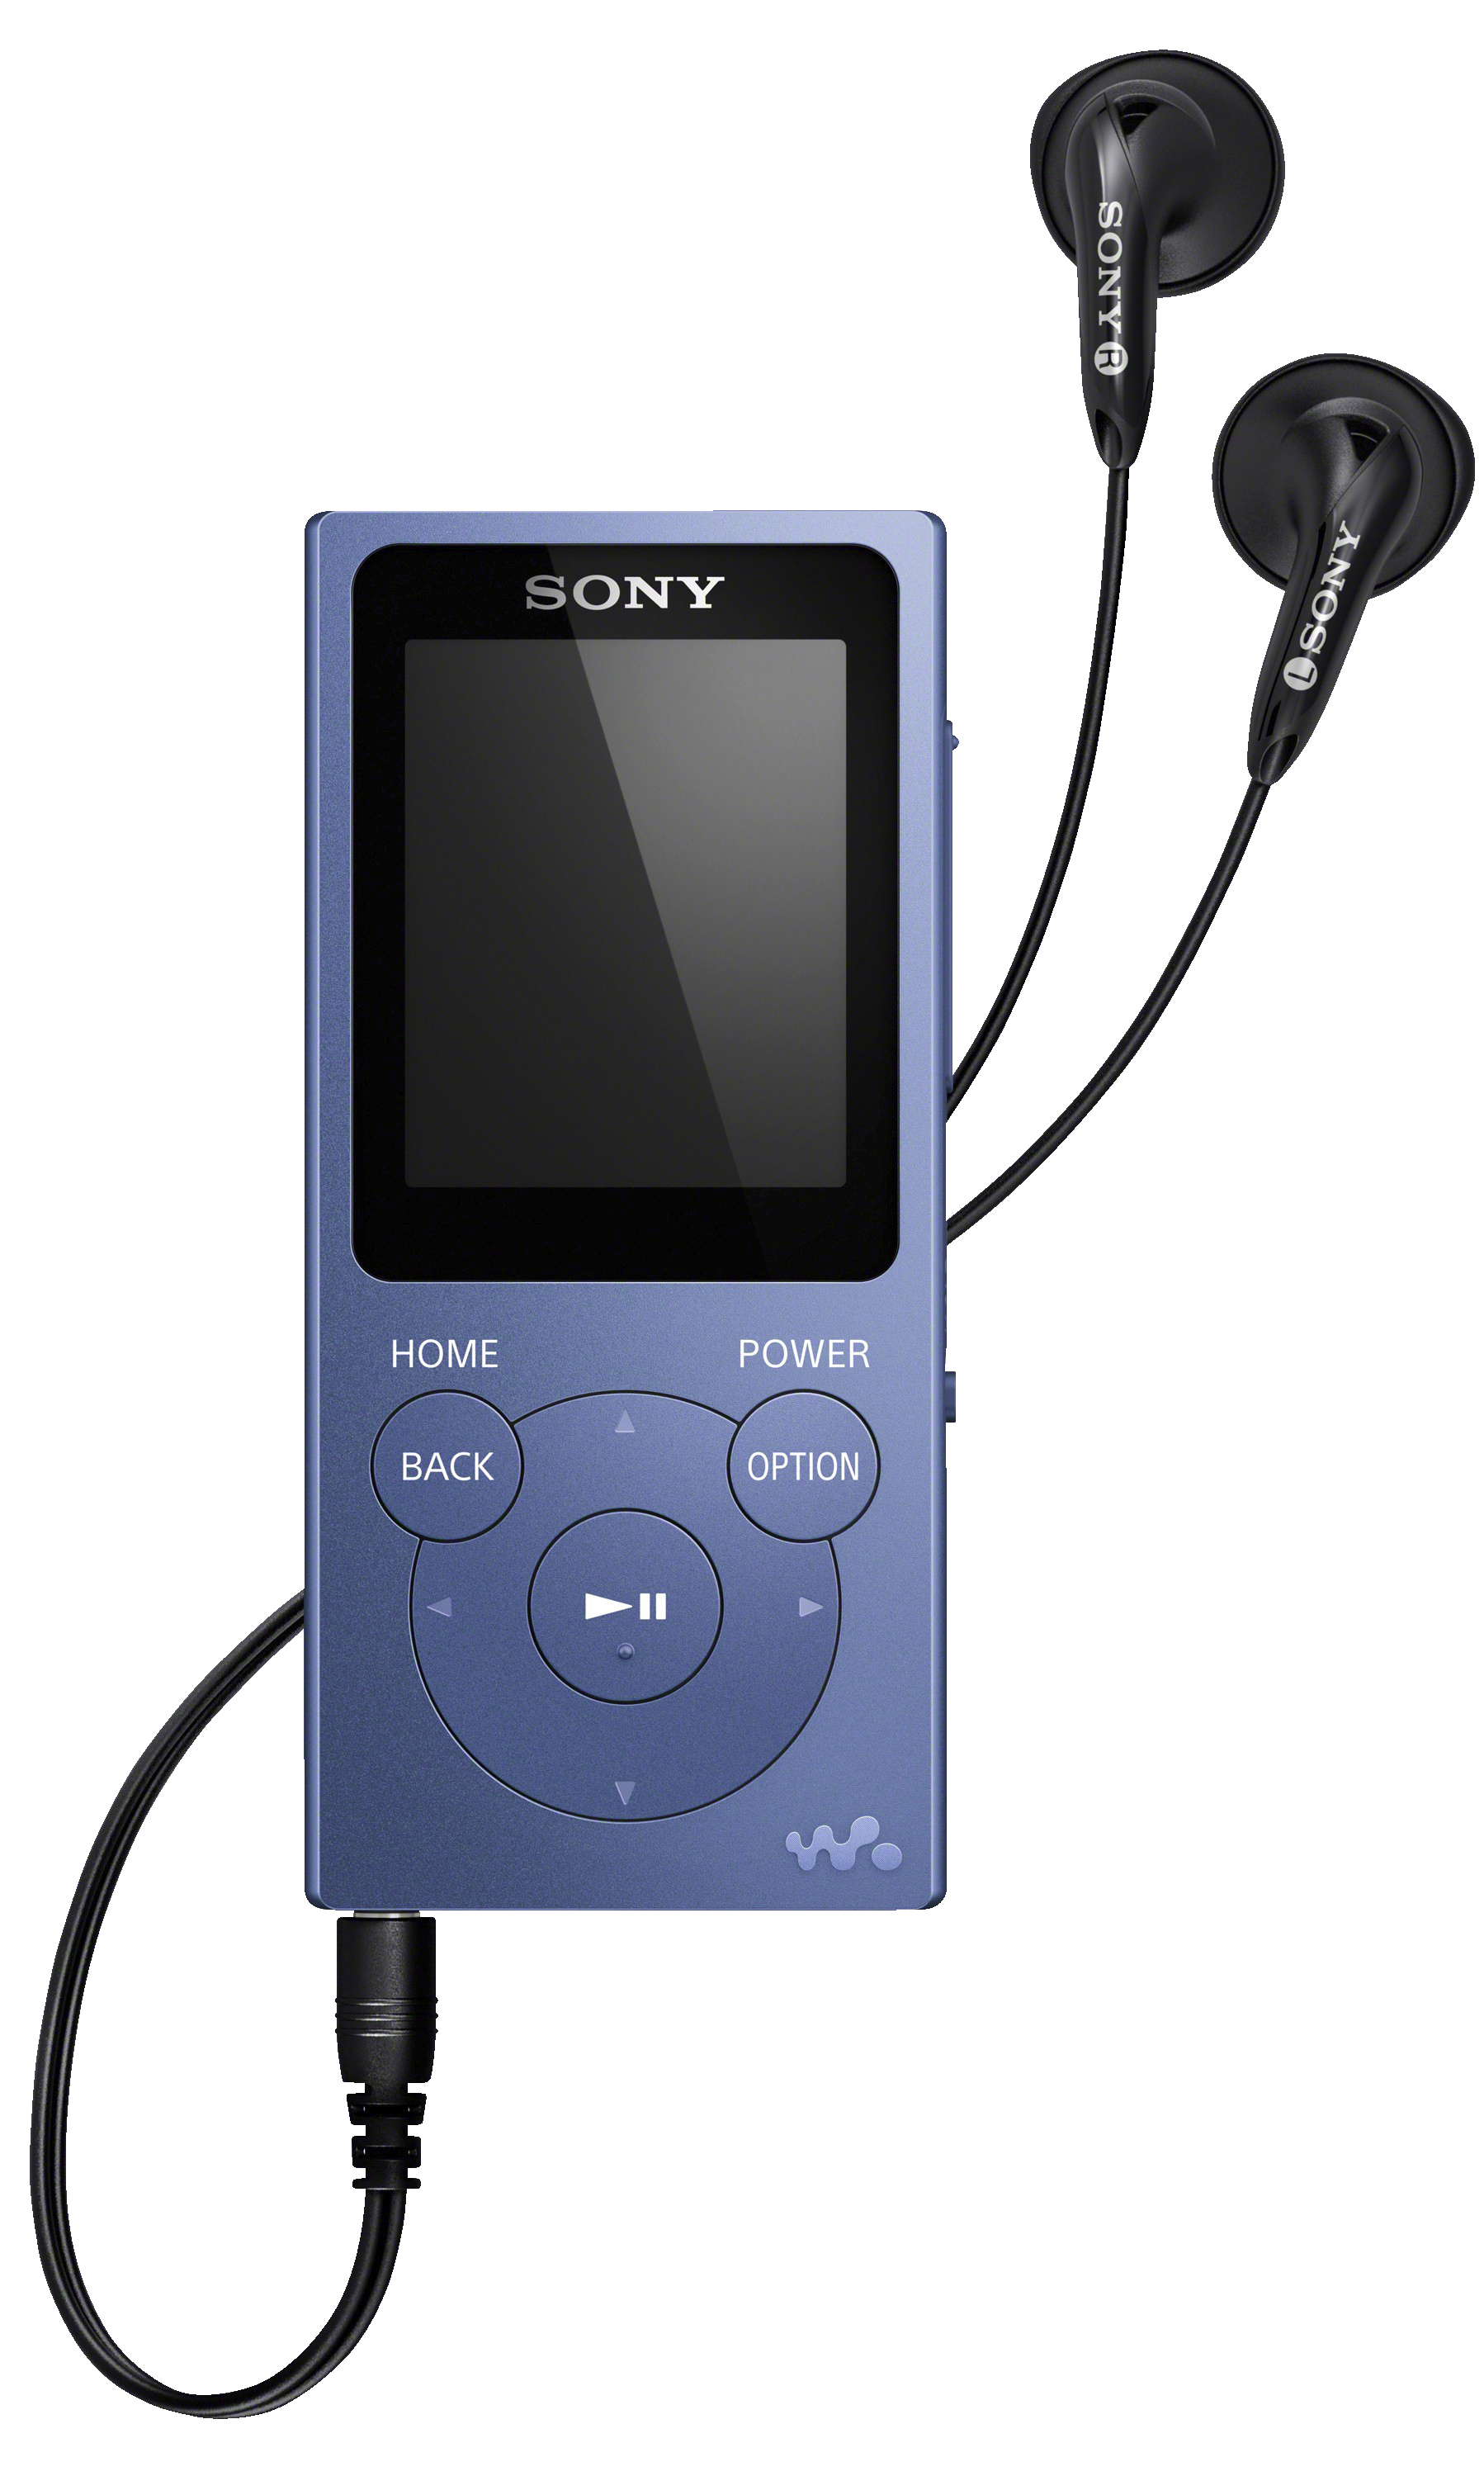 Sony Walkman 8 GB NWZ-E394 - blå - IPod & MP3 afspiller - Elgiganten